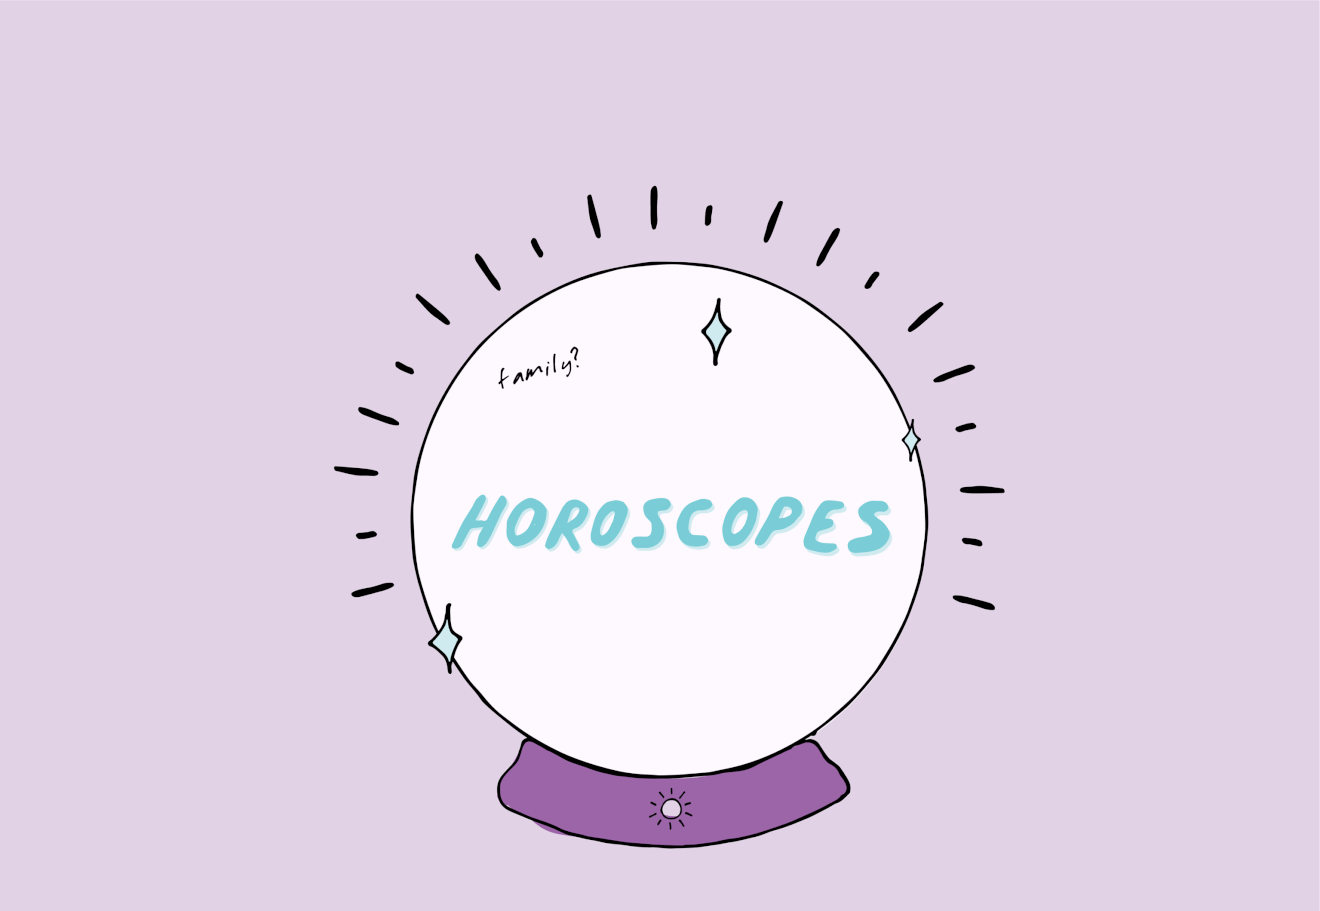 Monthly horoscopes - horoscope ball